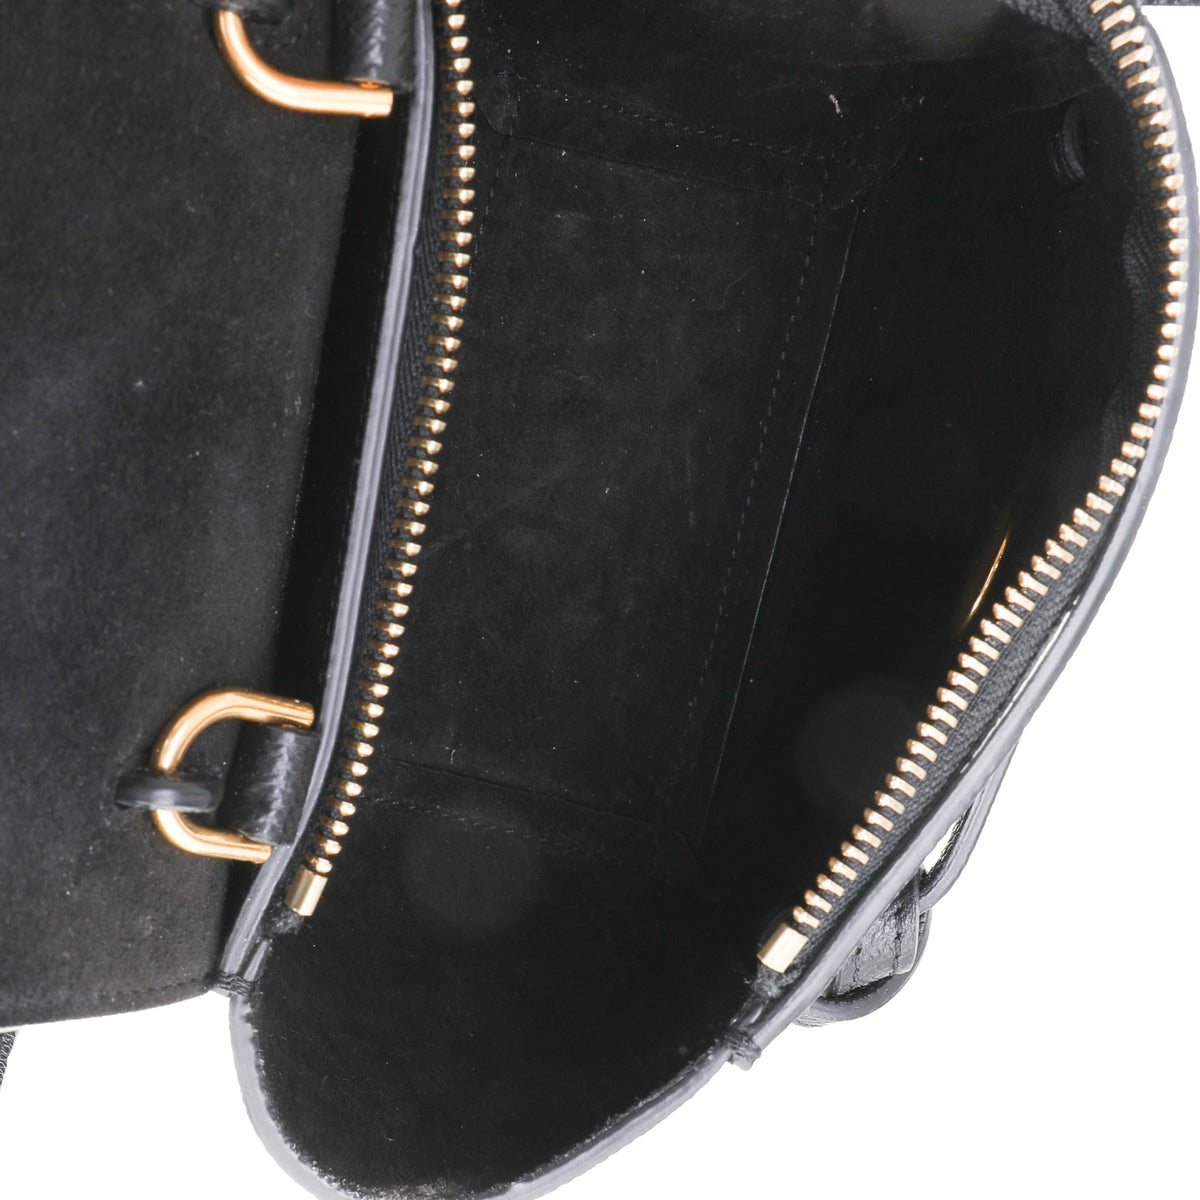 Celine Belt Bags Mini, Micro, Nano & Pico Comparison, Pros & Cons